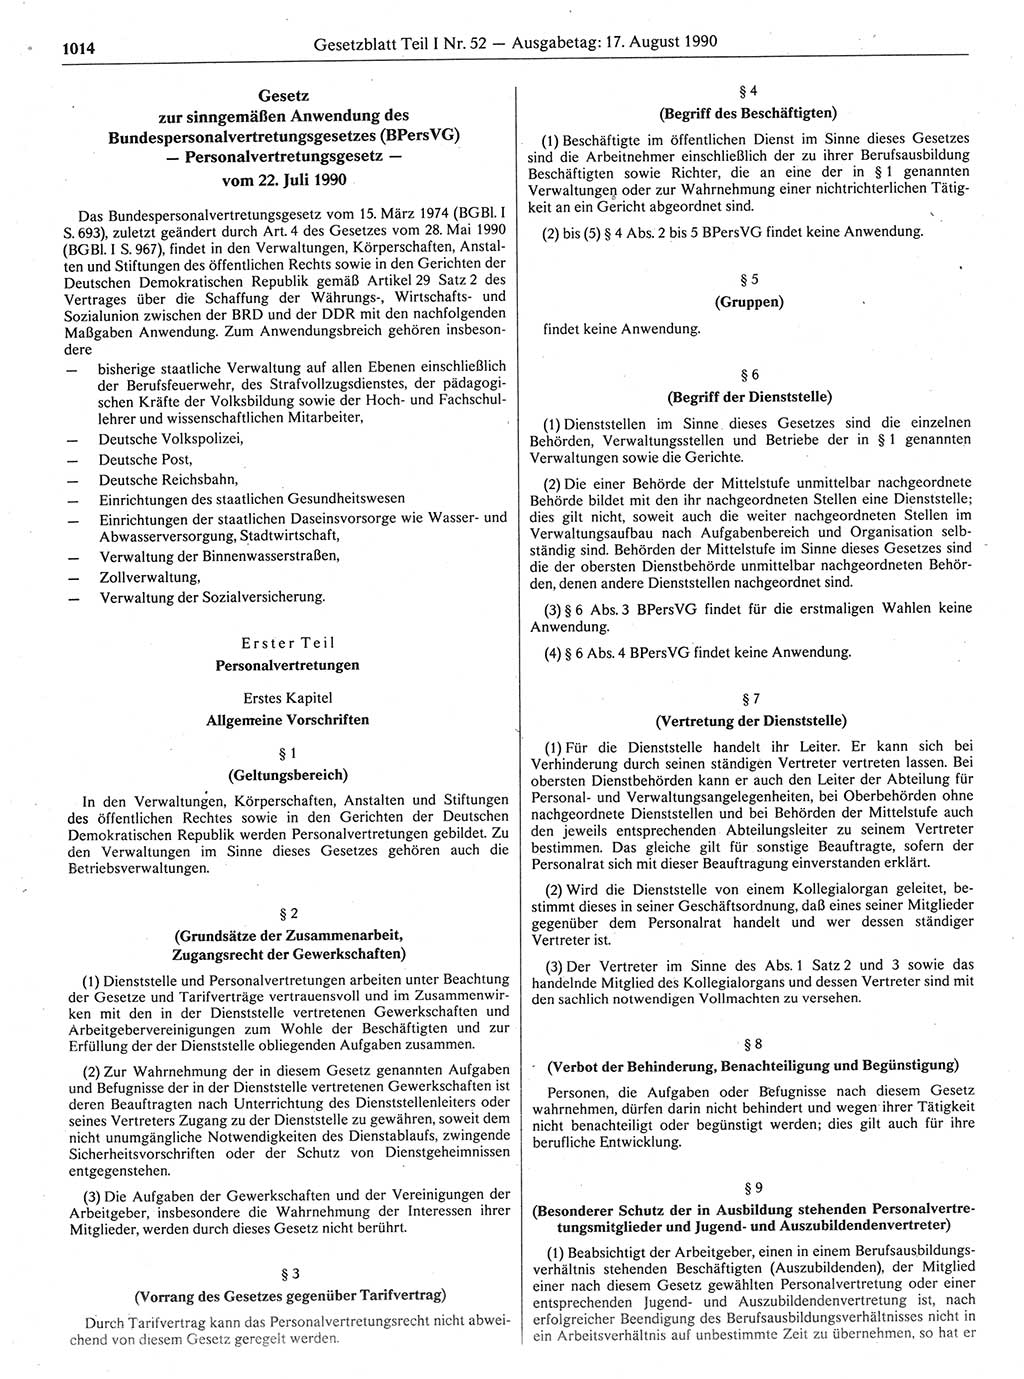 Gesetzblatt (GBl.) der Deutschen Demokratischen Republik (DDR) Teil Ⅰ 1990, Seite 1014 (GBl. DDR Ⅰ 1990, S. 1014)